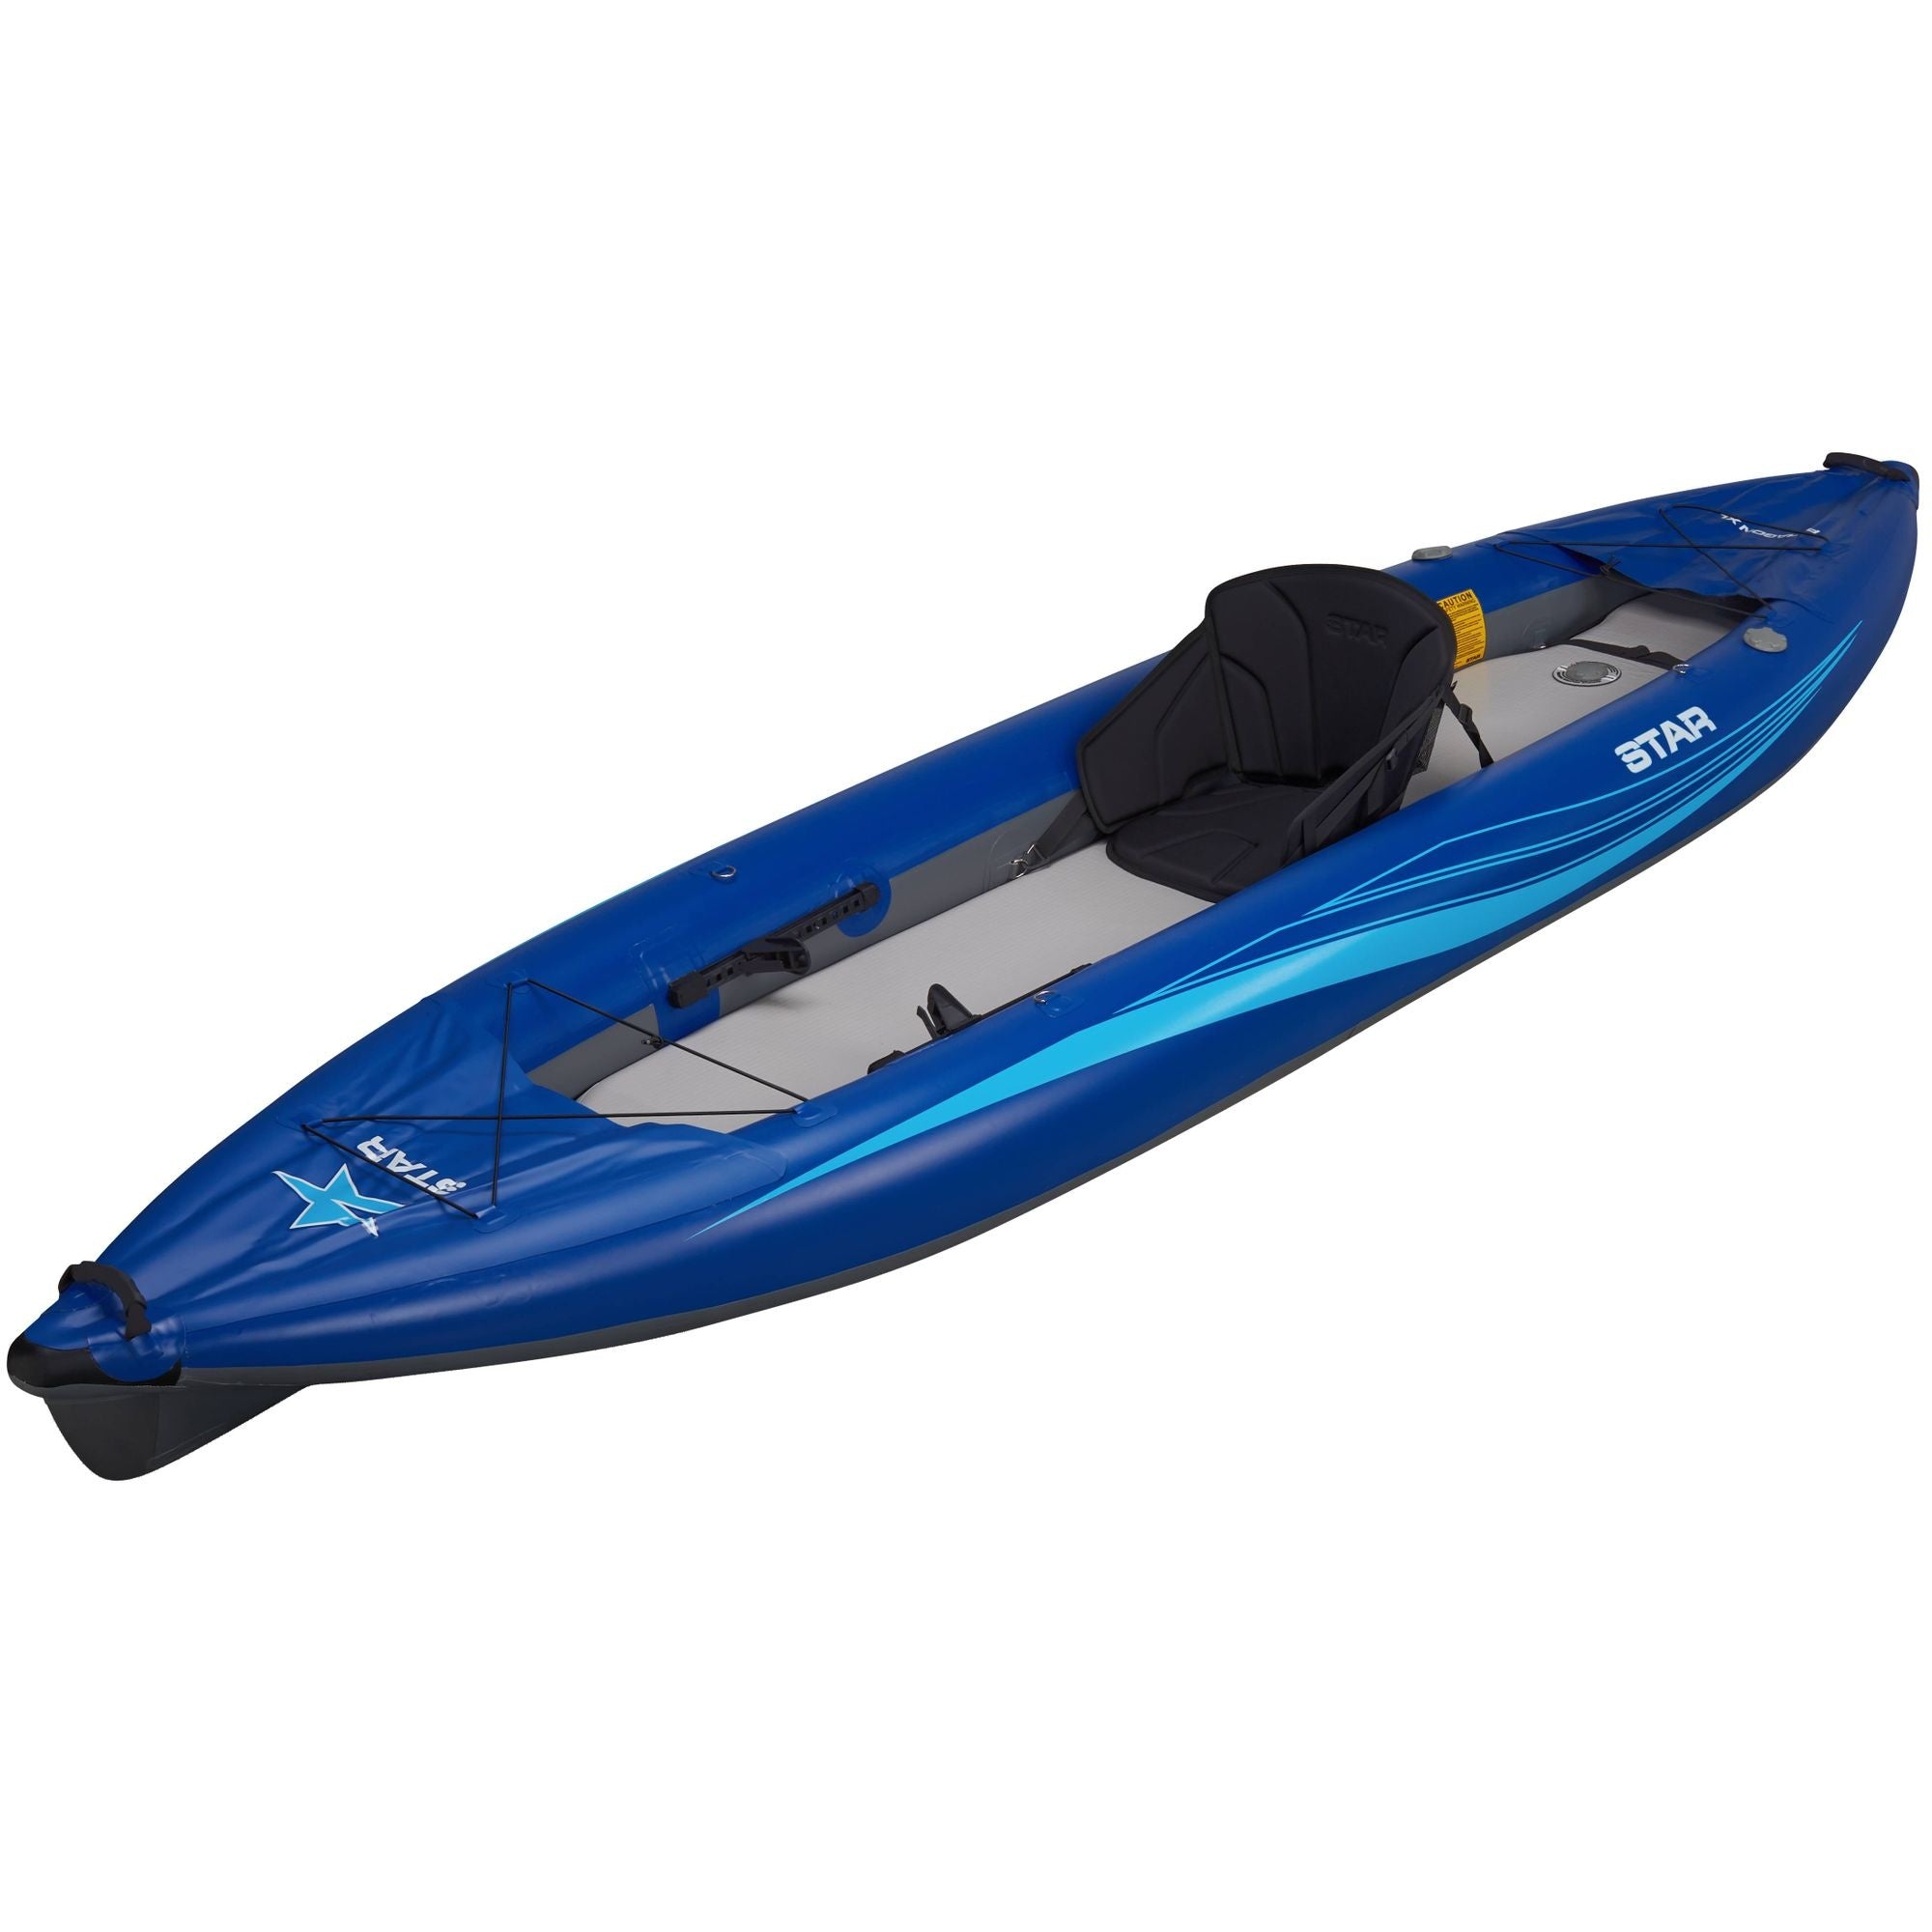 STAR - Paragon XL Inflatable Kayak